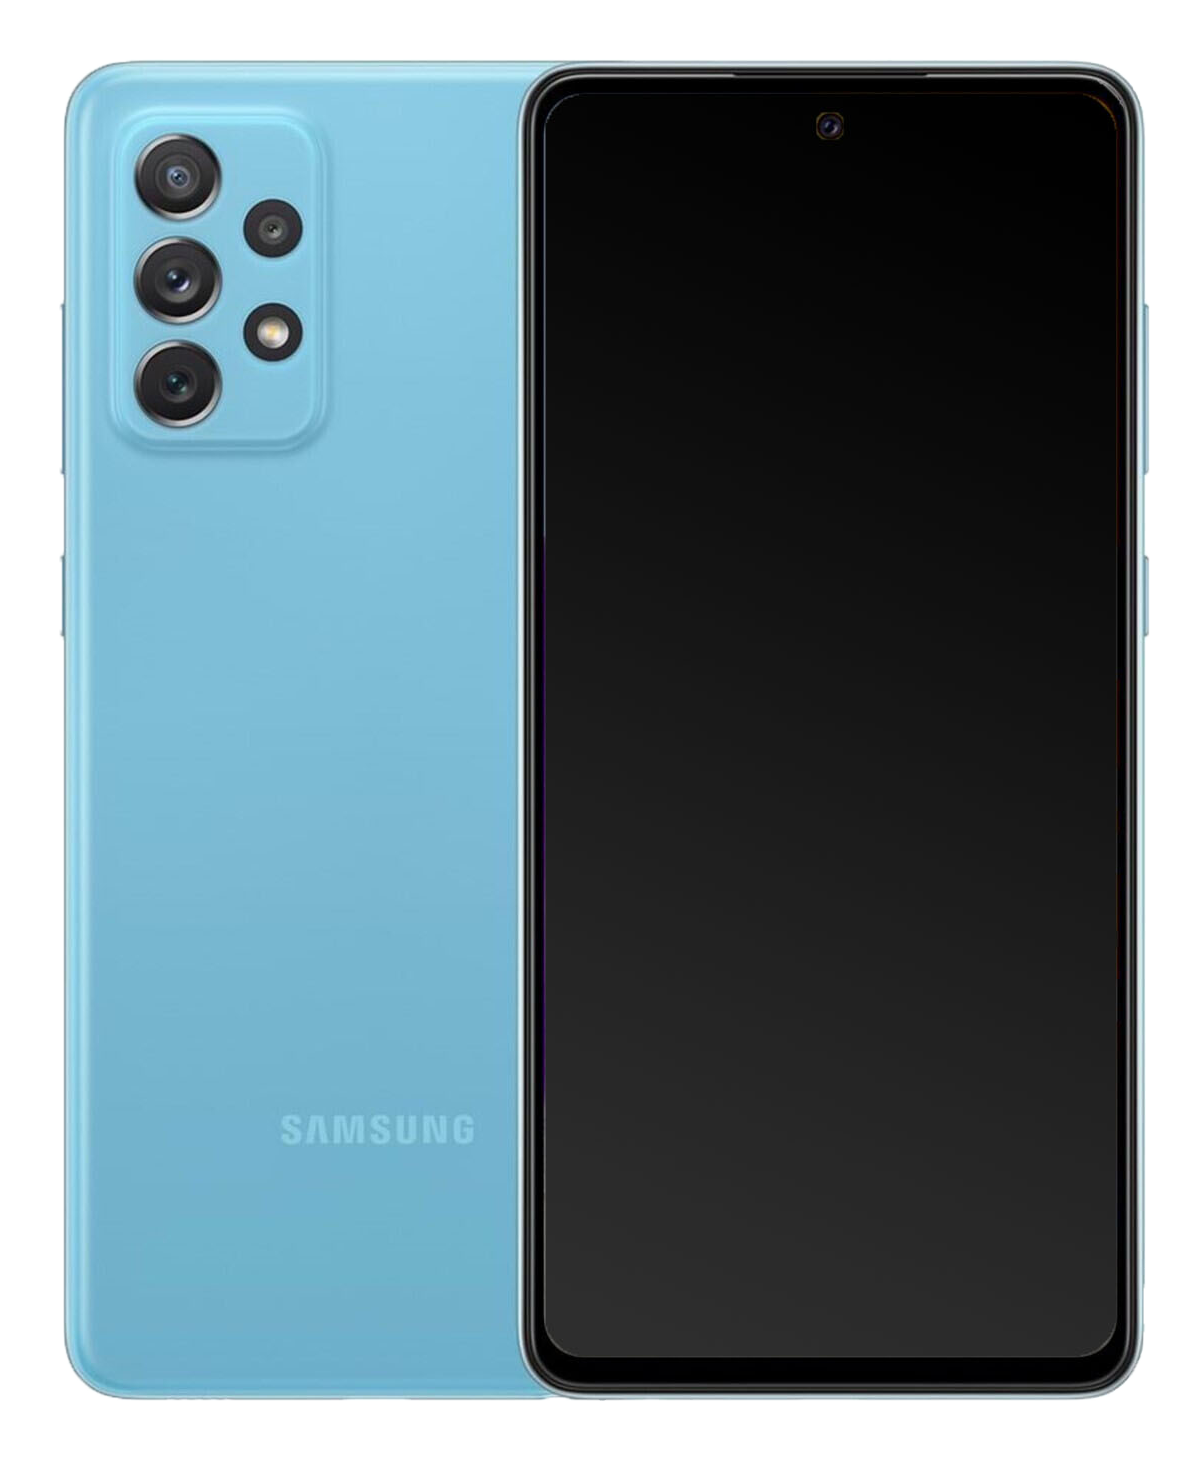 Galaxy A72 double SIM